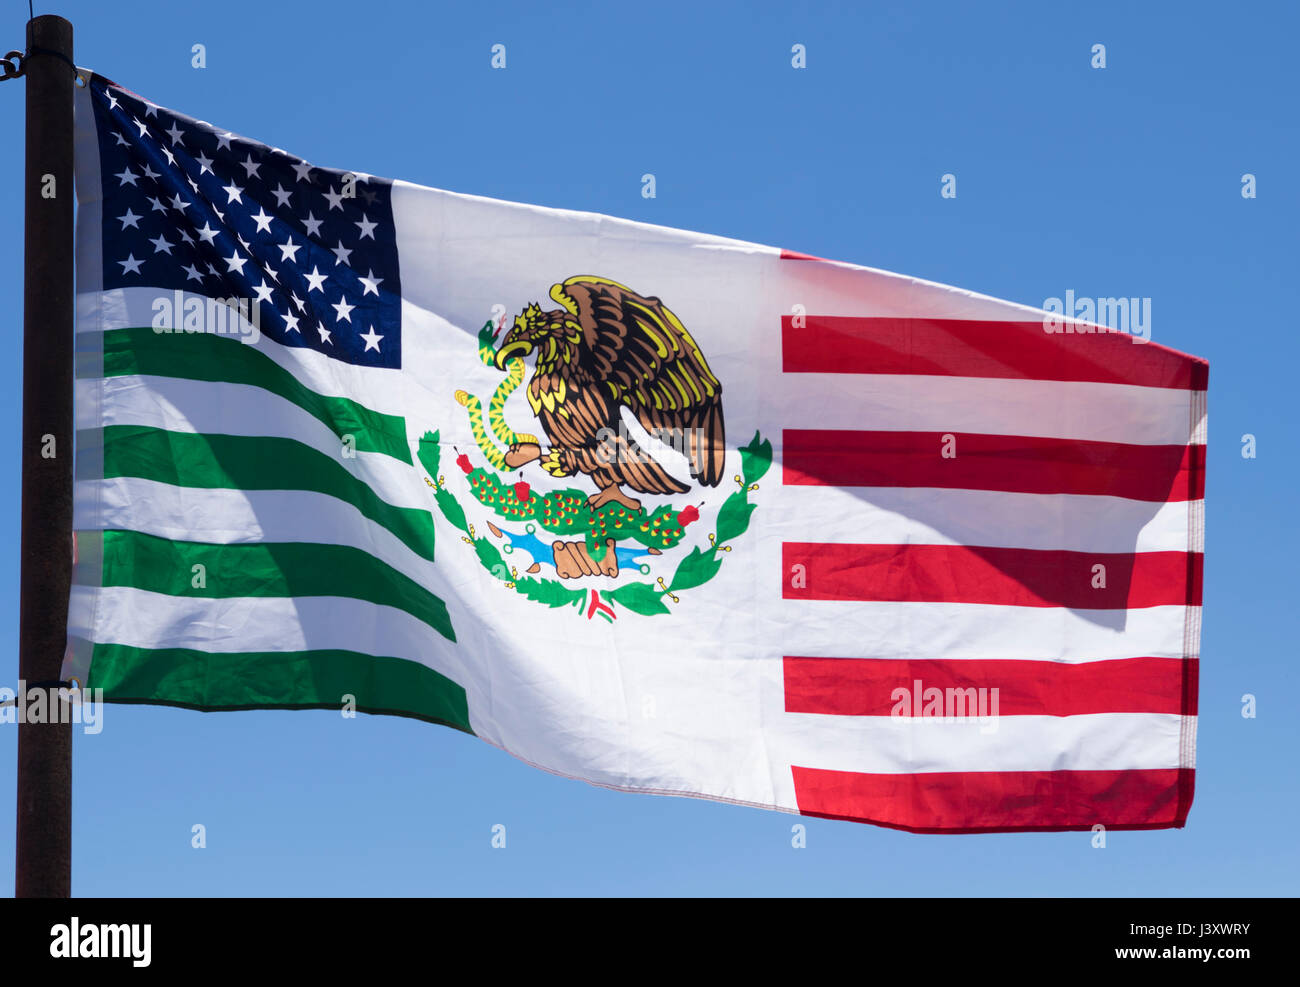 Eine Fahne die amerikanisch-mexikanische Freundschaft feiern soll fliegt während der Fiesta Protesta jährliche Demonstration in Lajitas, Texas statt. Stockfoto